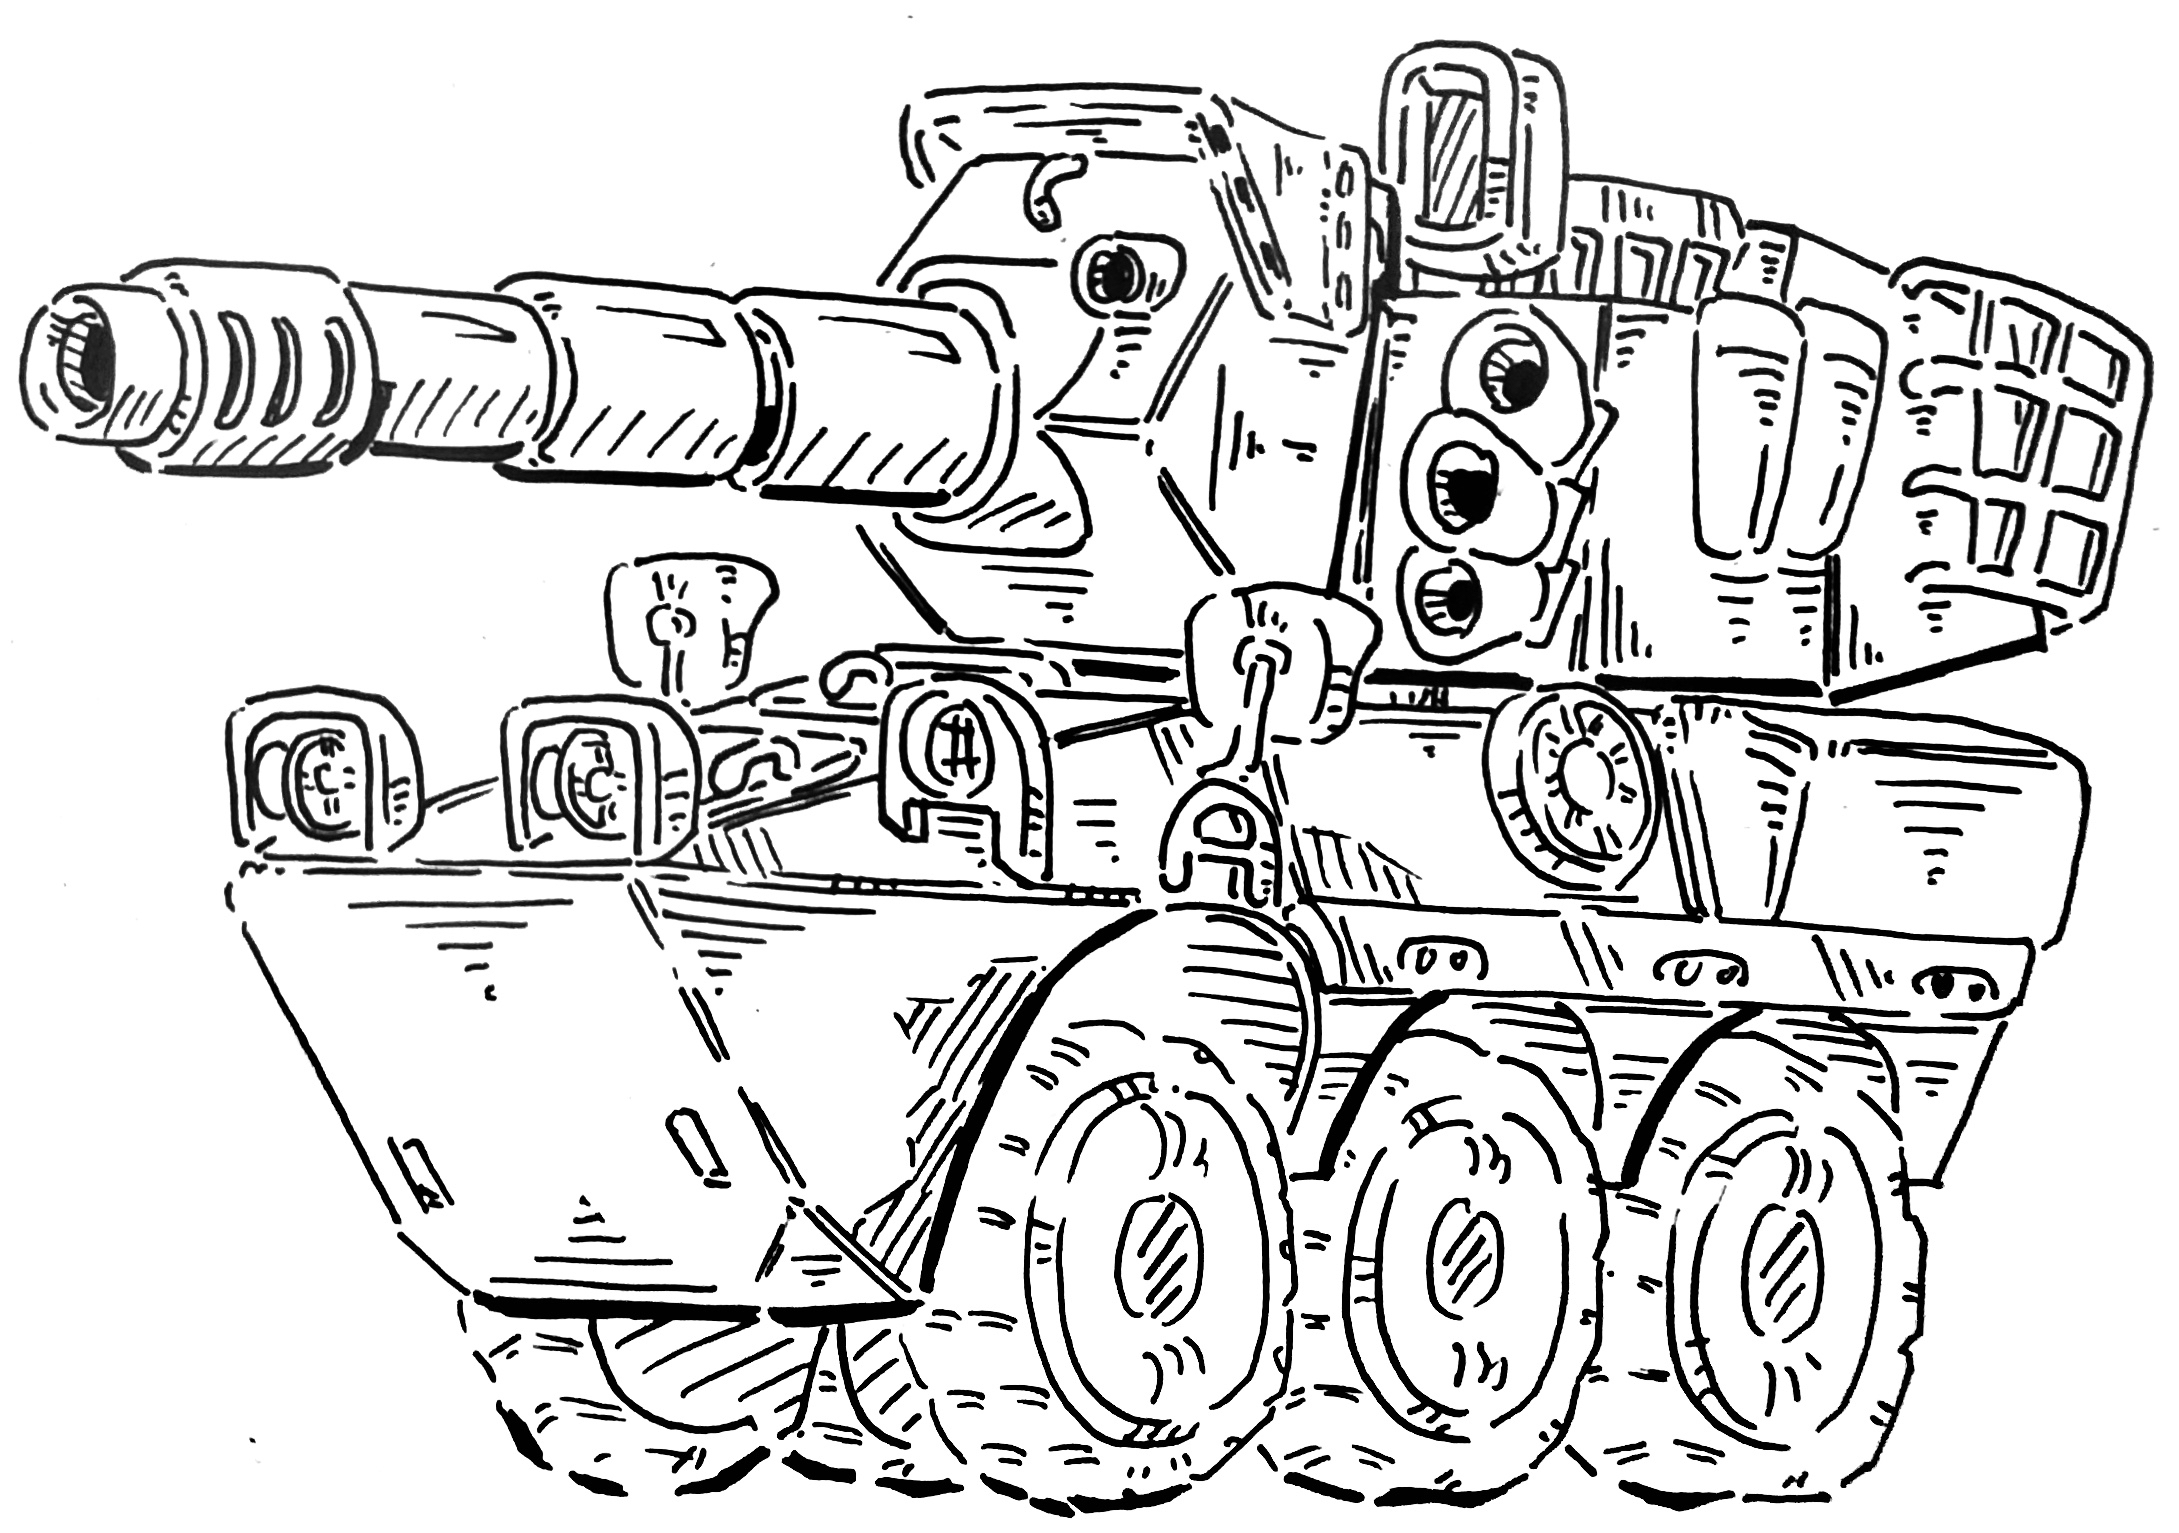 装甲车画法简笔画图片